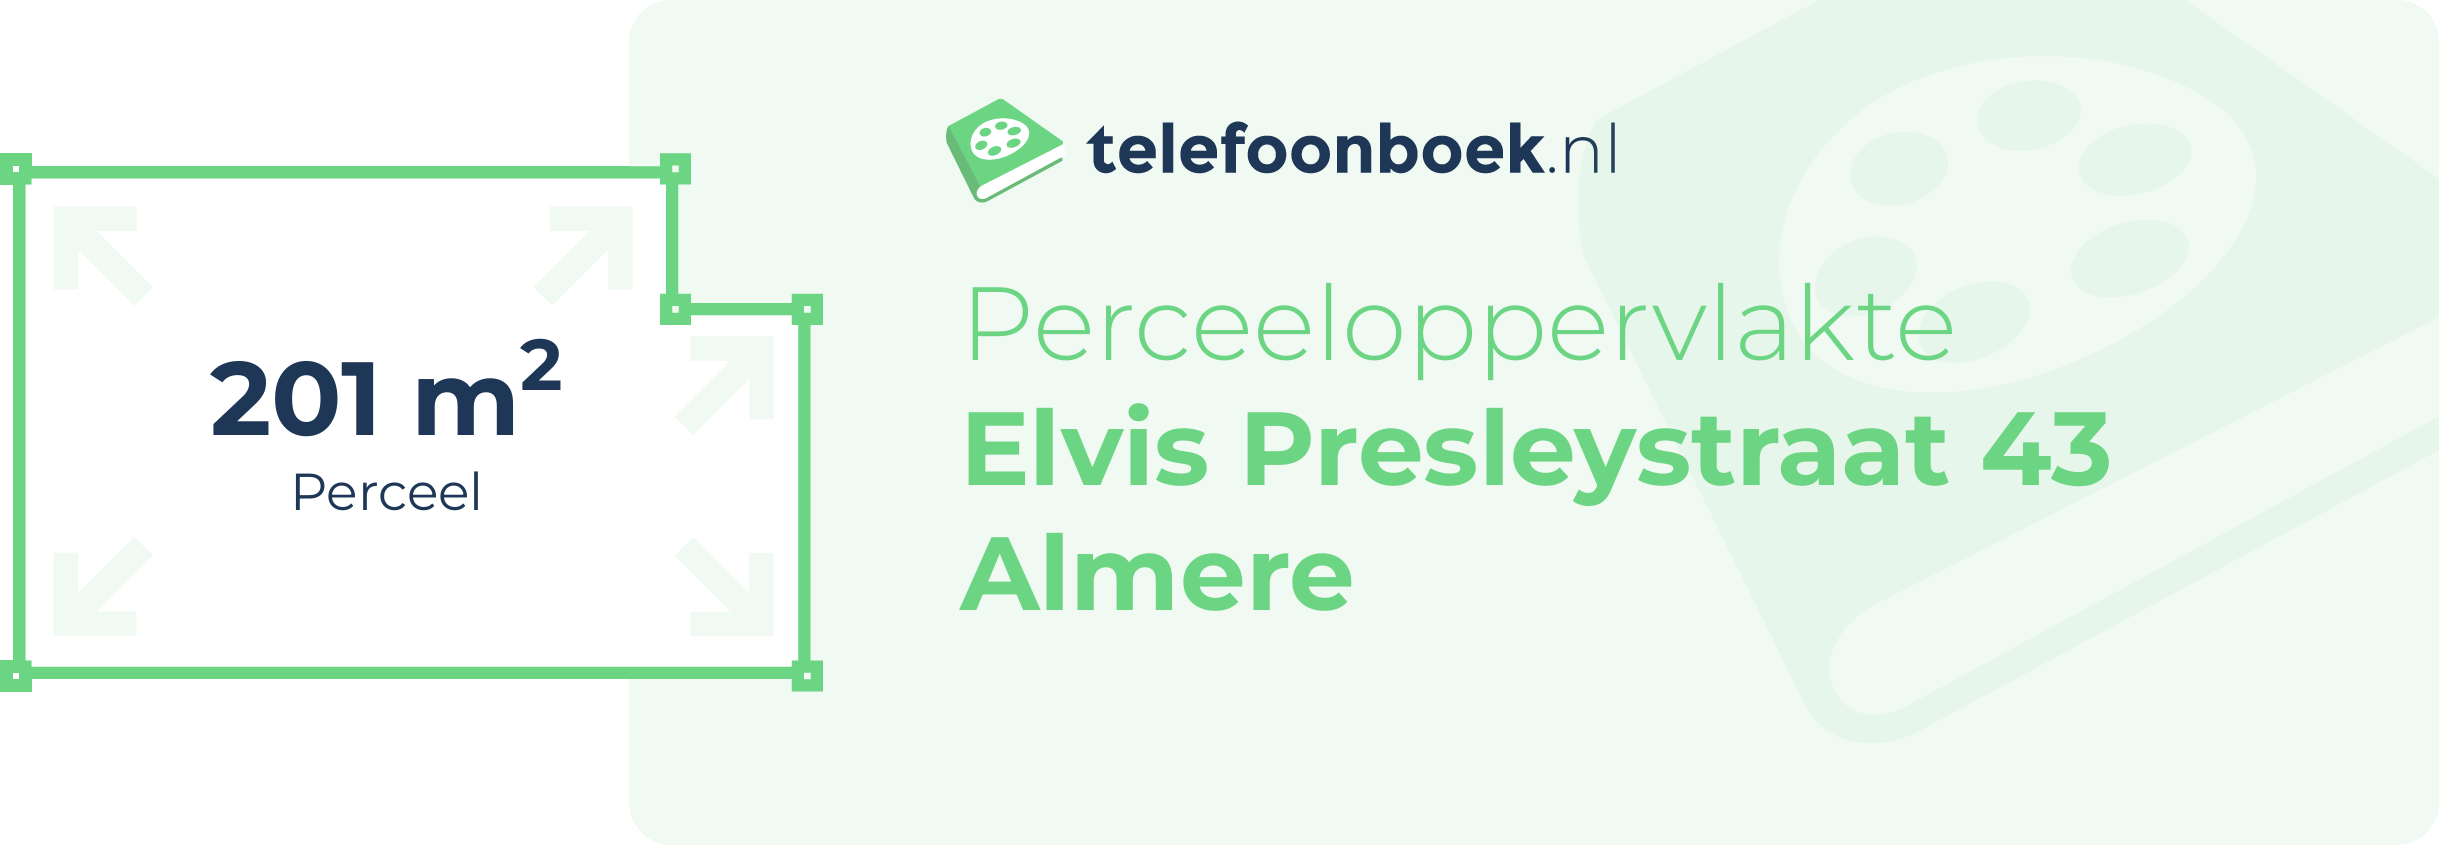 Perceeloppervlakte Elvis Presleystraat 43 Almere